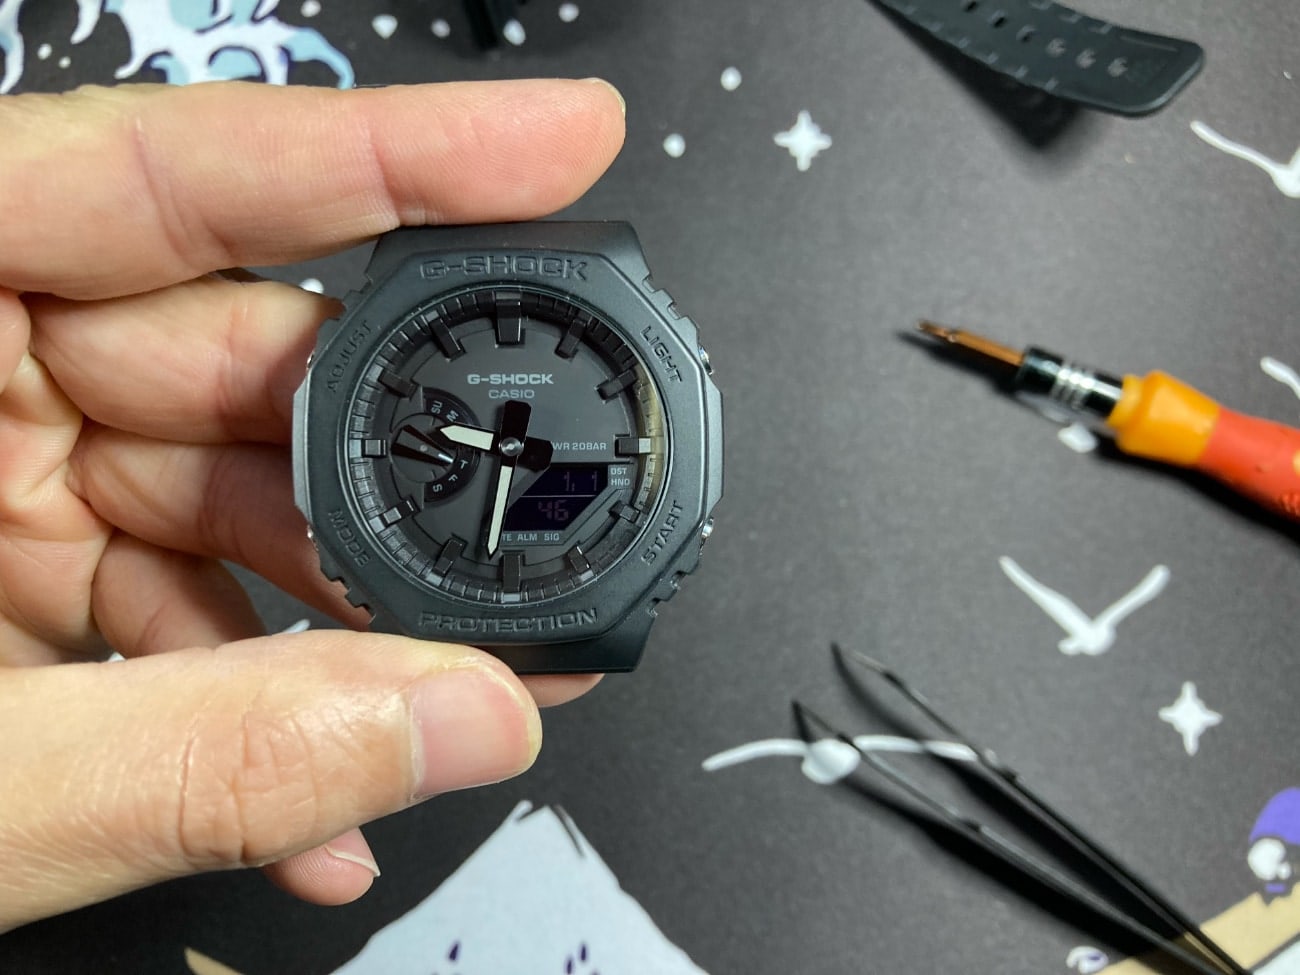 Cambio de pila en el Casio G-Shock GA-2100: ponemos los cuatro tornillos y ponemos en hora el reloj. 